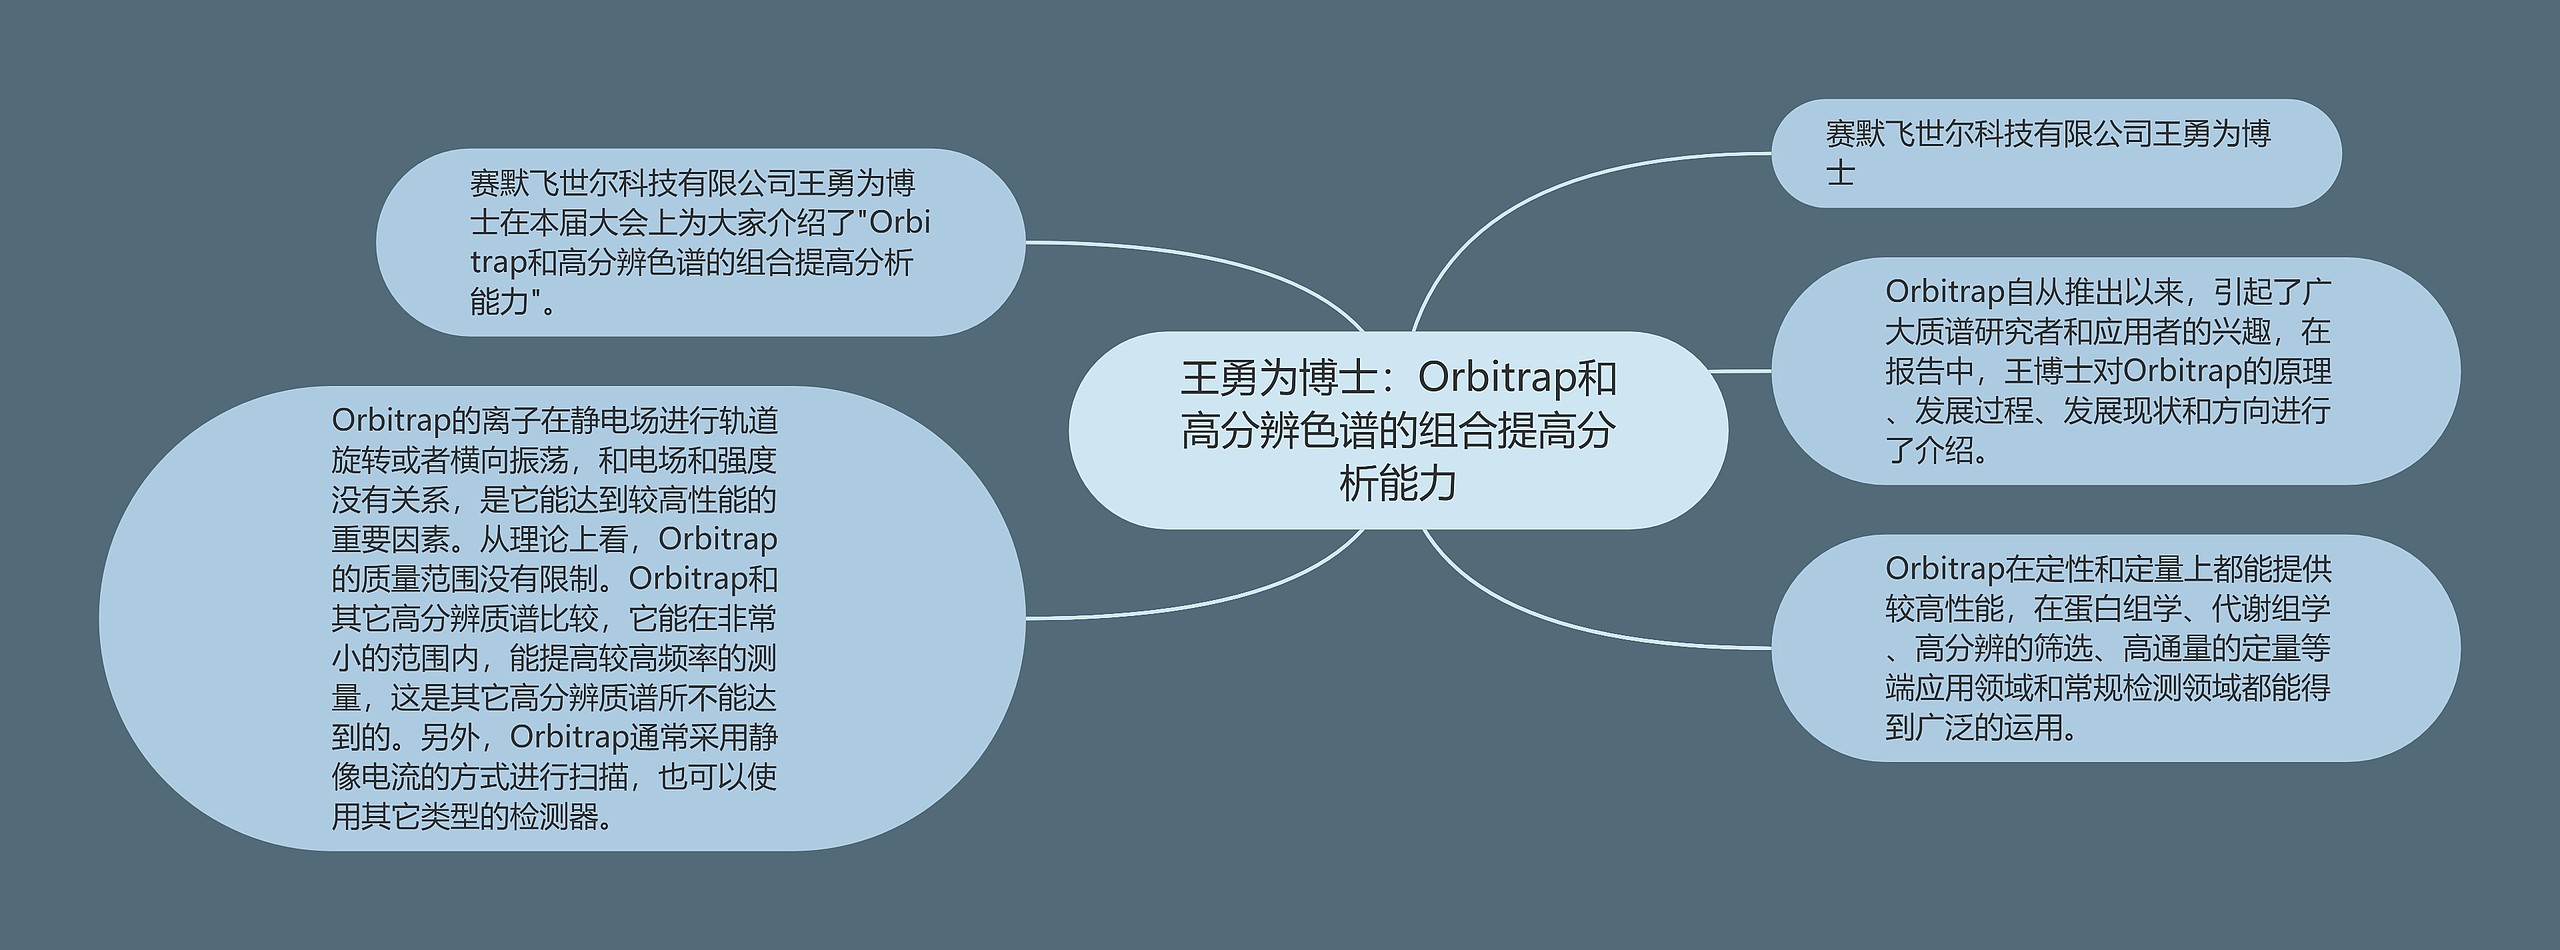 王勇为博士：Orbitrap和高分辨色谱的组合提高分析能力